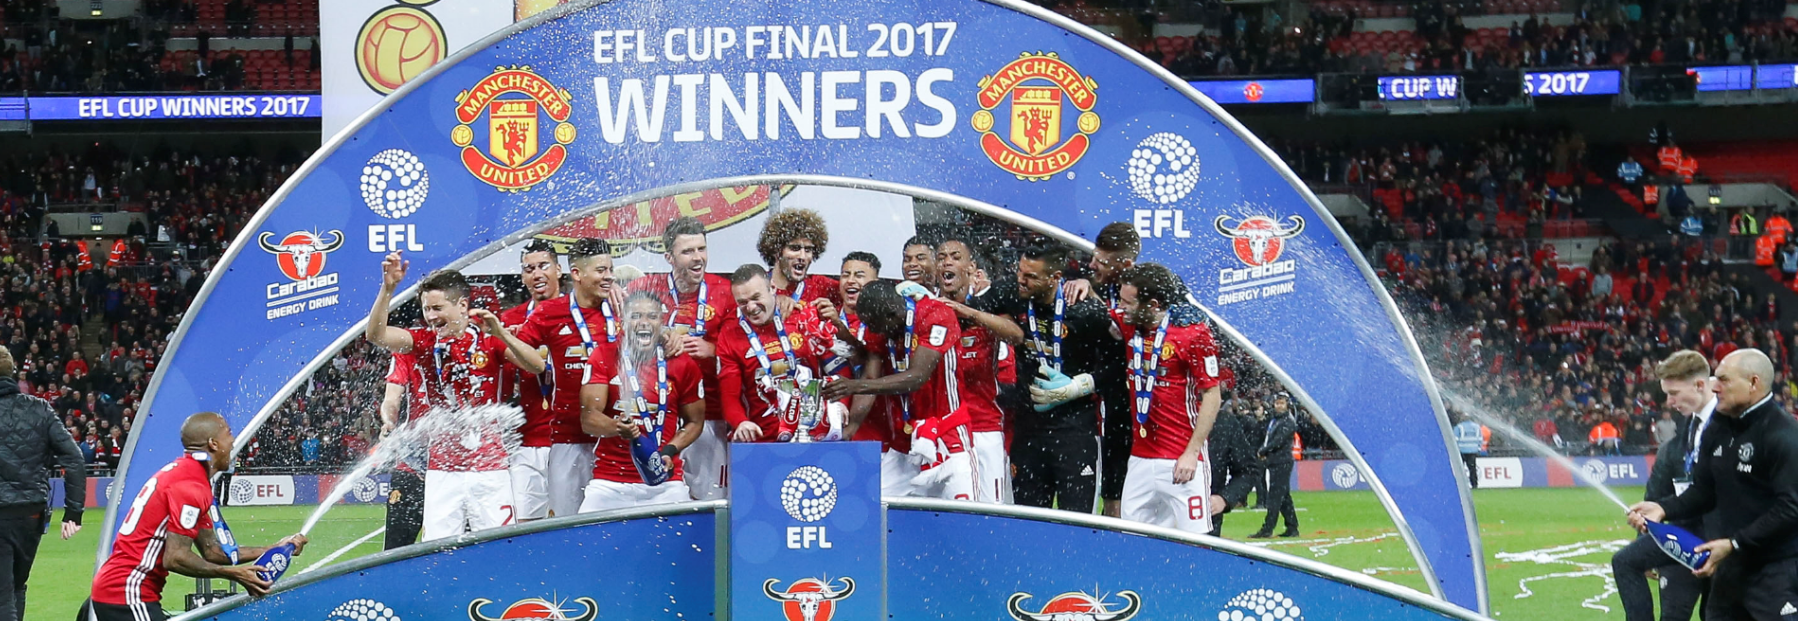 Man Utd pakt met de EFL Cup de eerste prijs van het seizoen